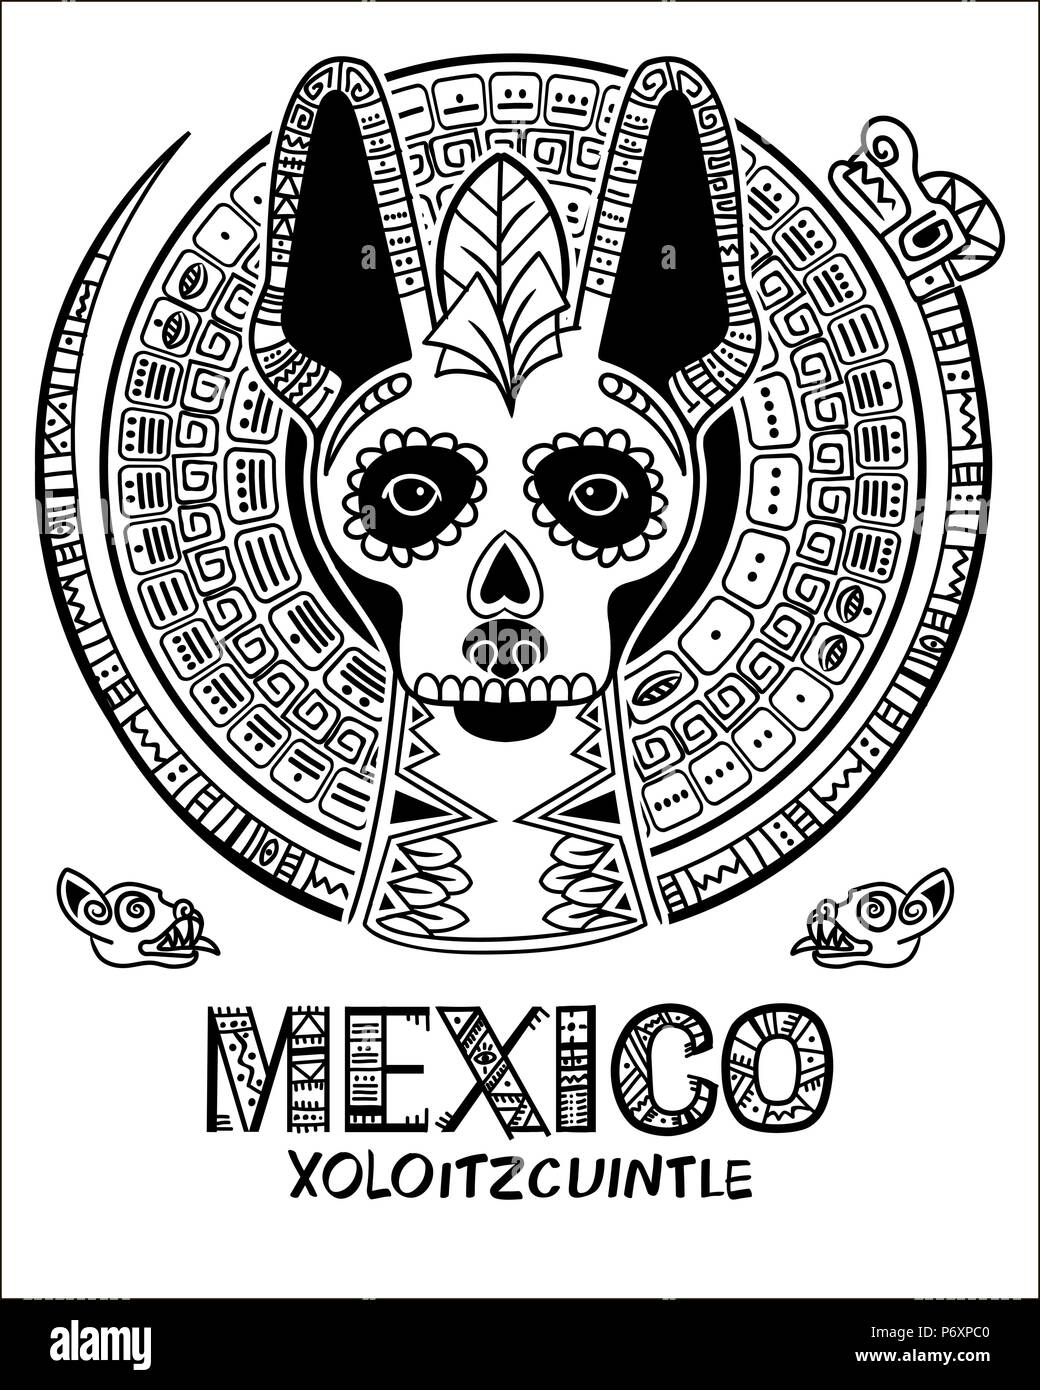 Image vectorielle d'un chien dans un style ethnique. Chien mexicain et crâne mexicain Illustration de Vecteur